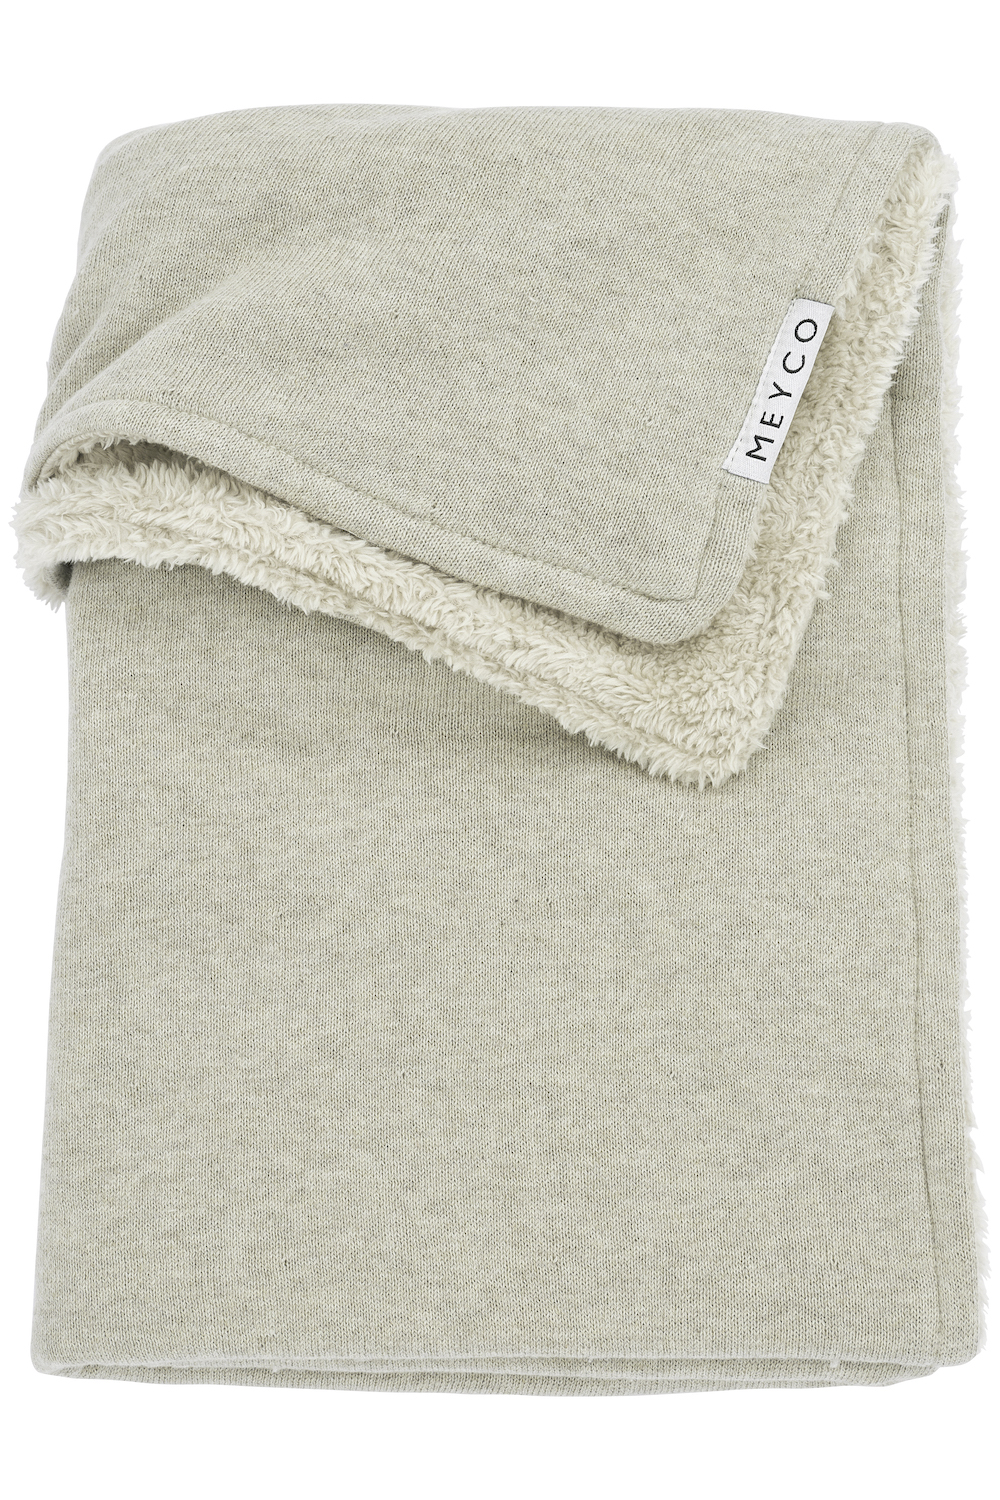 Cot bed blanket Knit Basic teddy - sand melange - 100x150cm